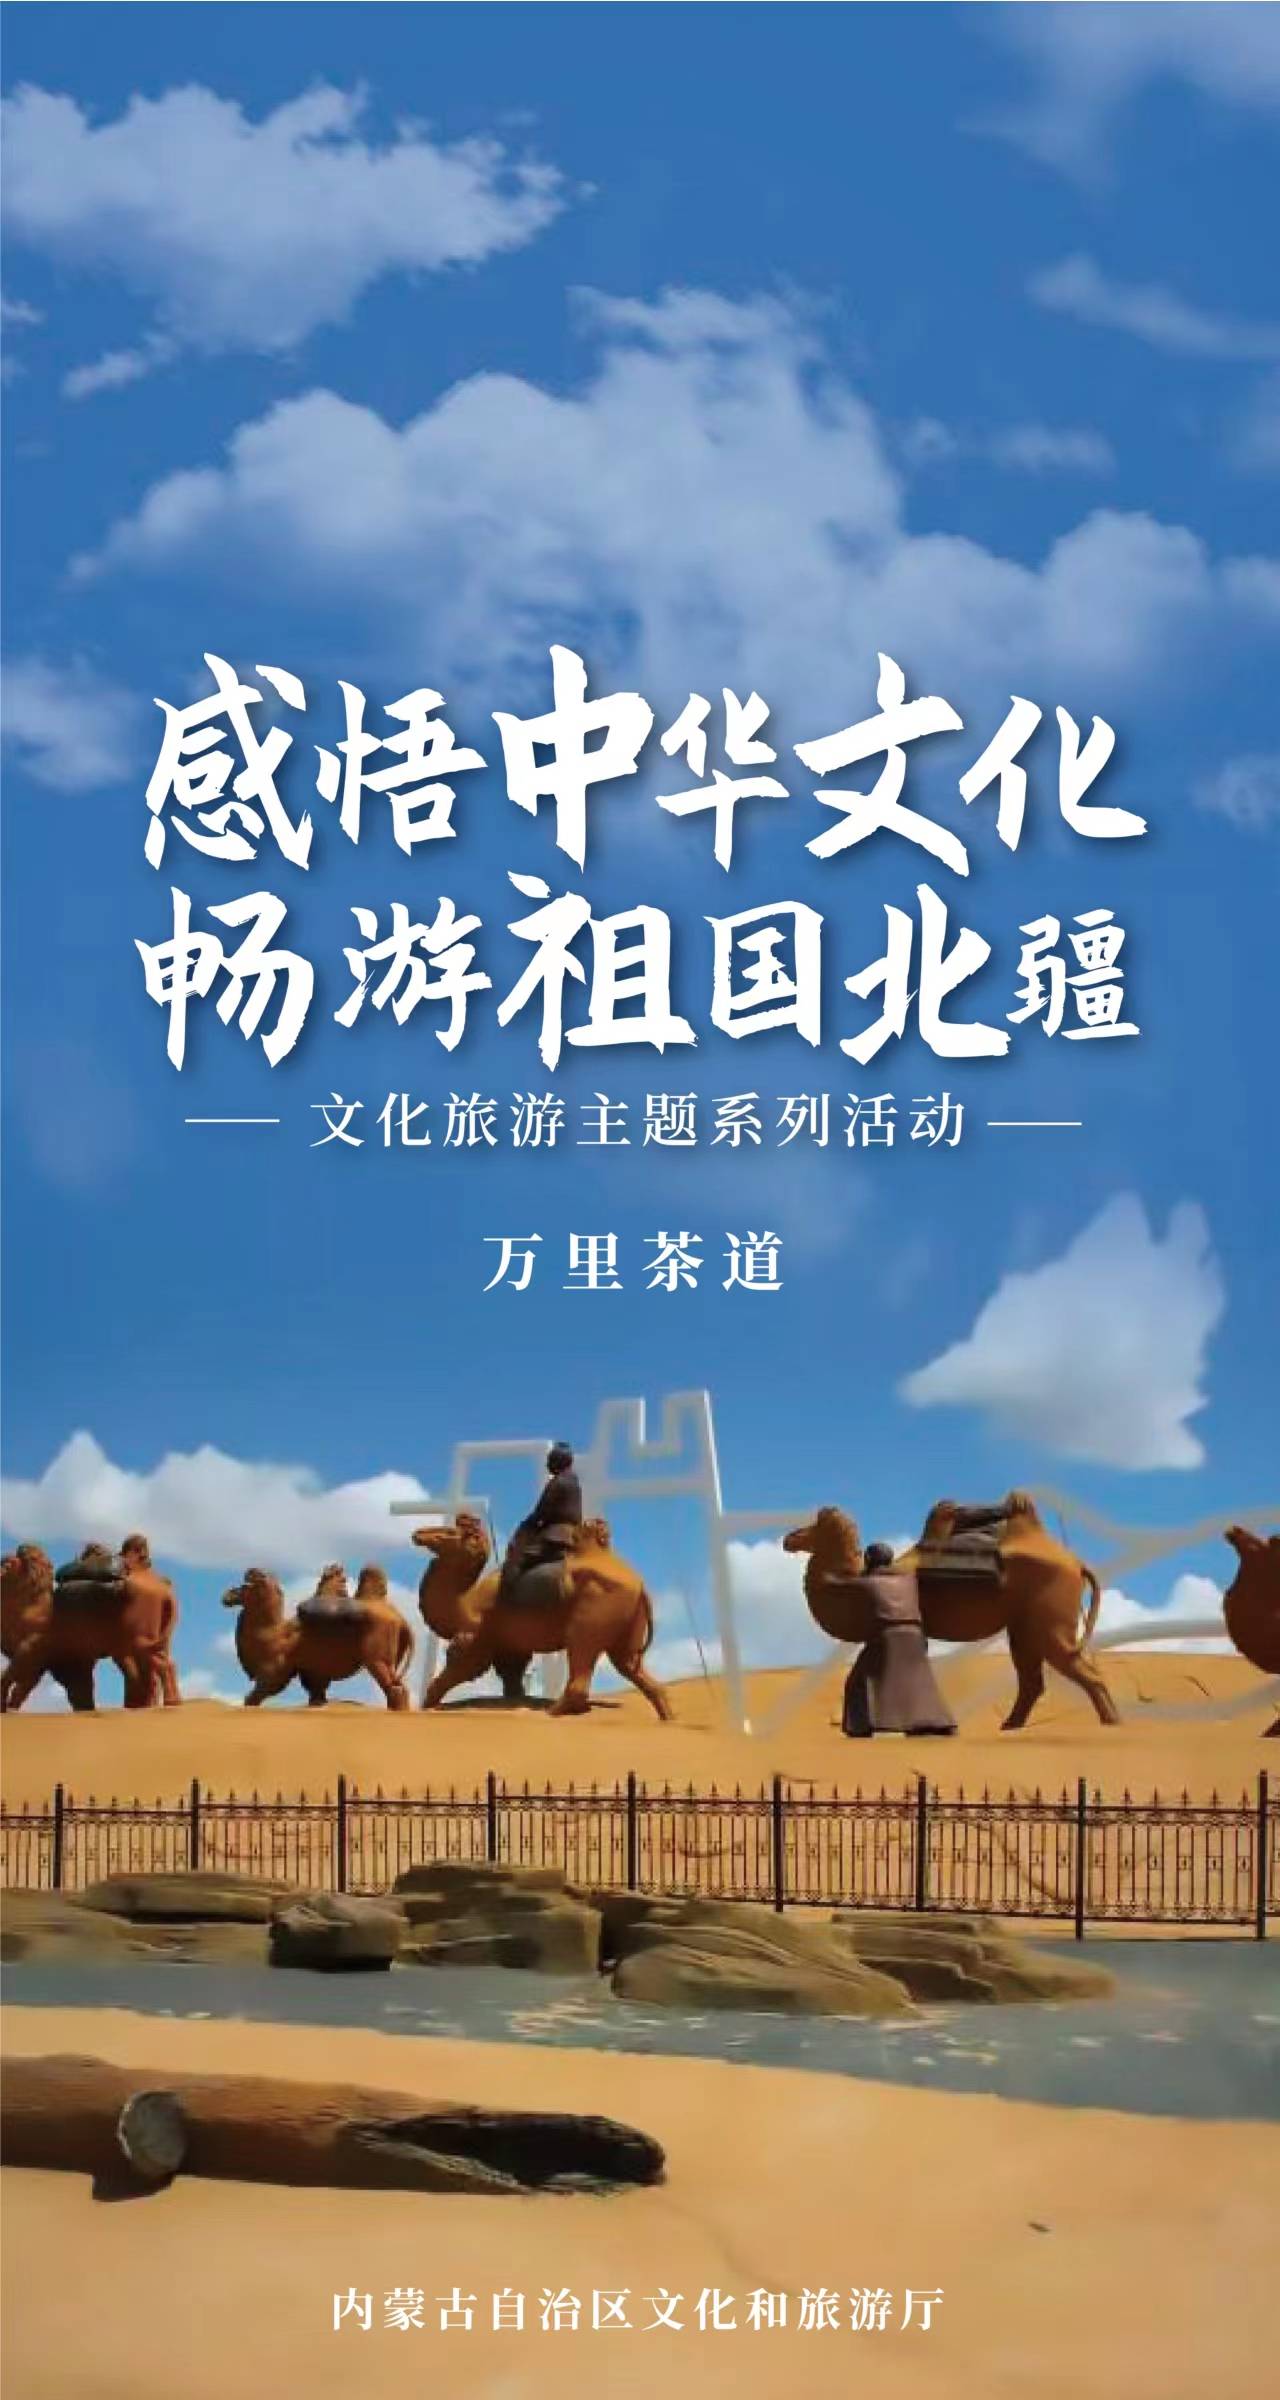 “万里茶道”主题系列活动将在内蒙古乌兰察布启幕